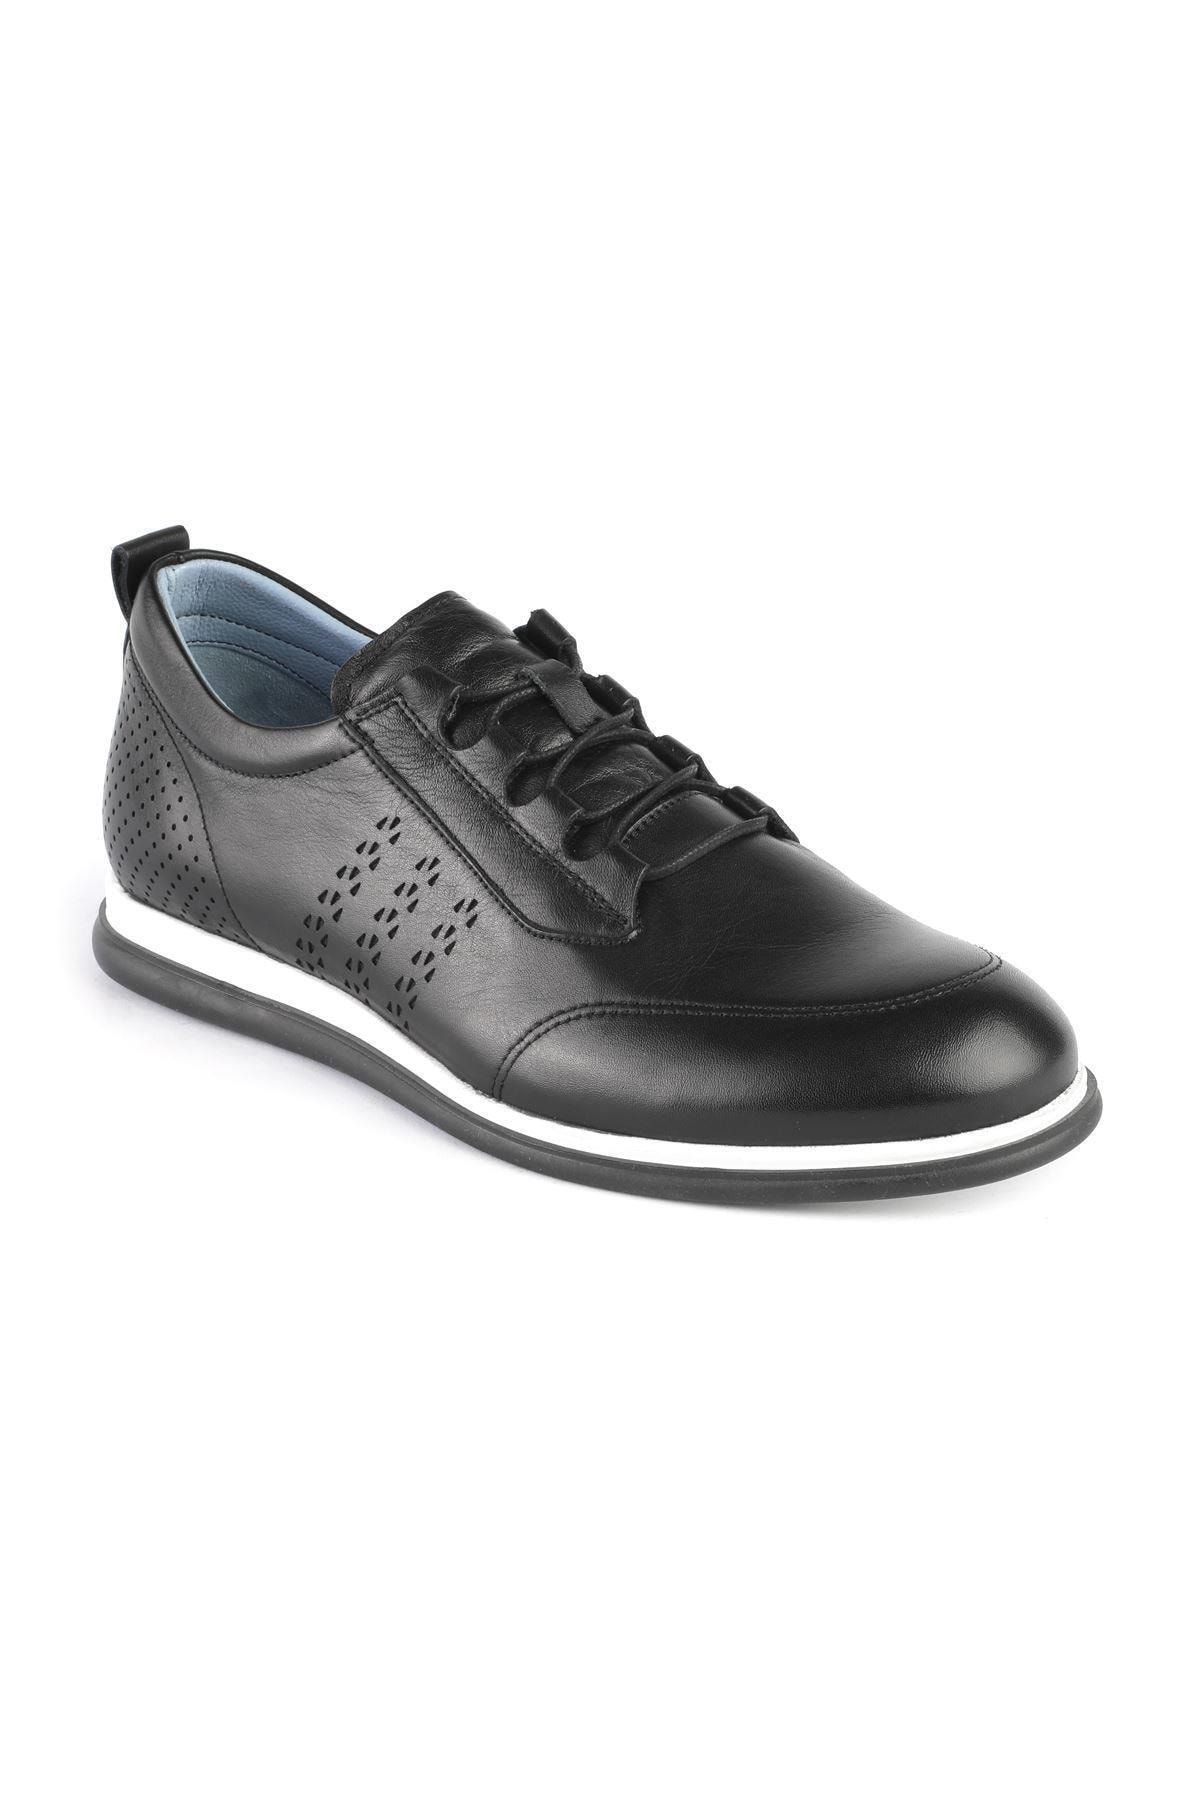 Libero Siyah - Hakiki Deri Erkek Sneaker Ayakkabı(39-45) 21y L3274 M